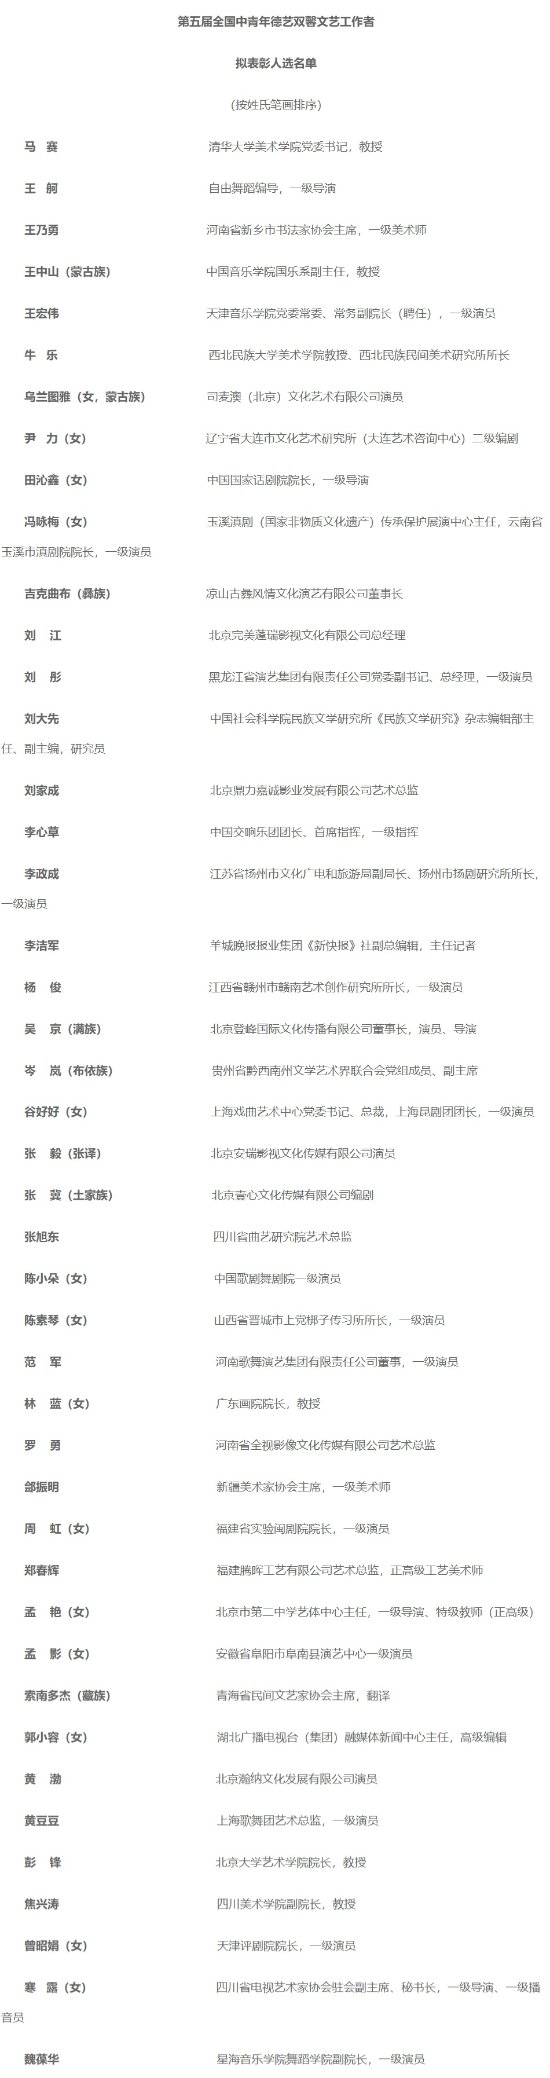 第五届全国中青年德艺双馨文艺工作者拟表彰名单公布 吴京、黄渤、张译入选